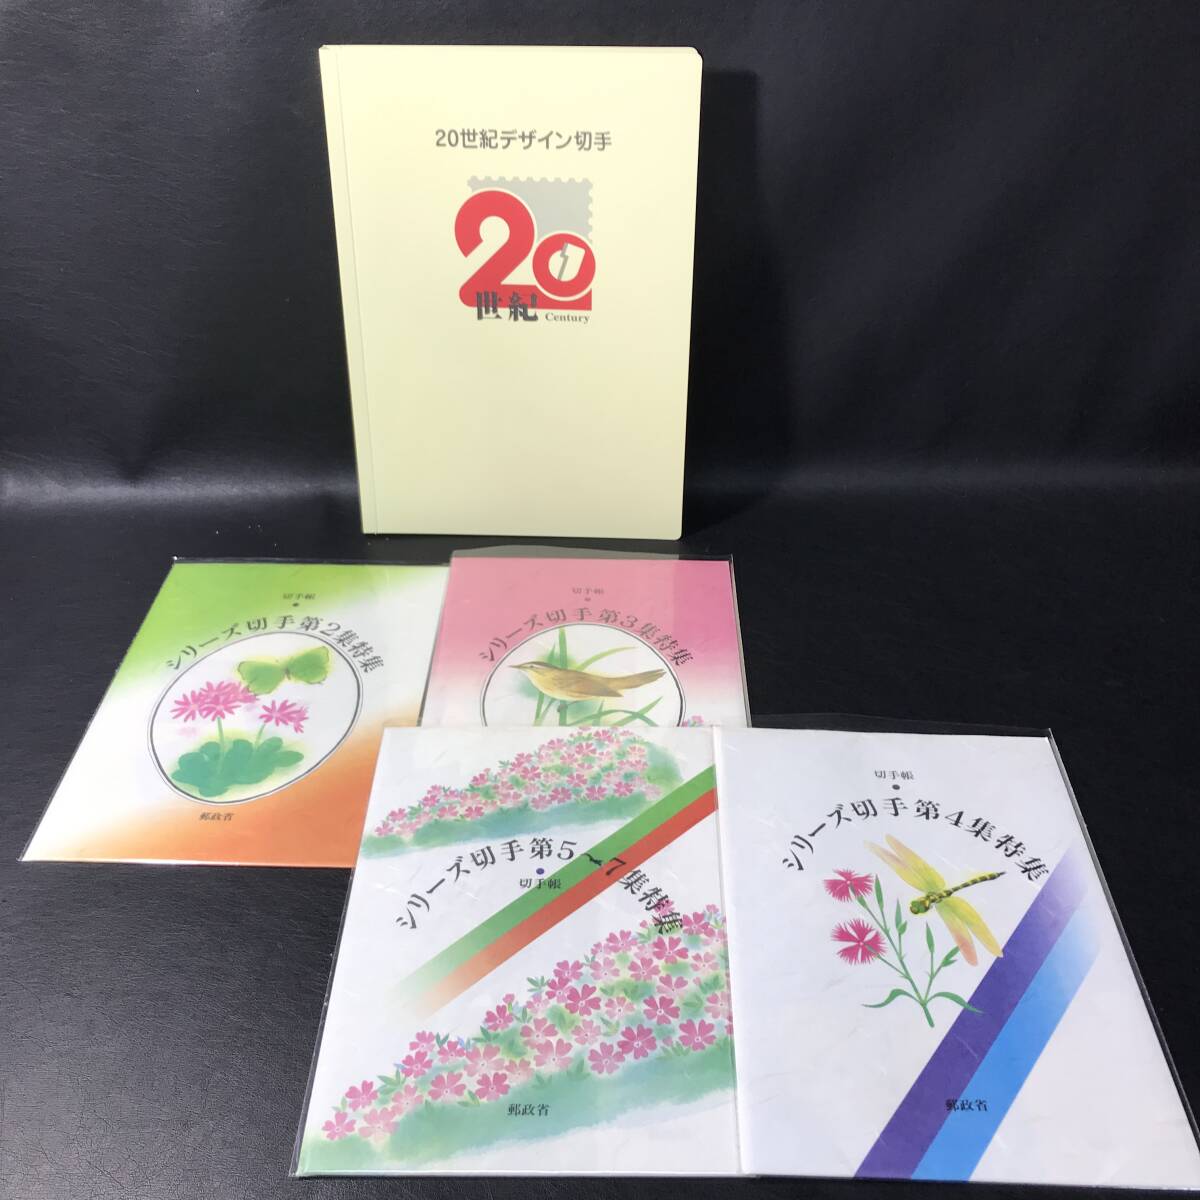 TG12 20世紀デザイン切手 と シリーズ切手 第2～7集特集 4冊 まとめて 額面16000円分程の画像1